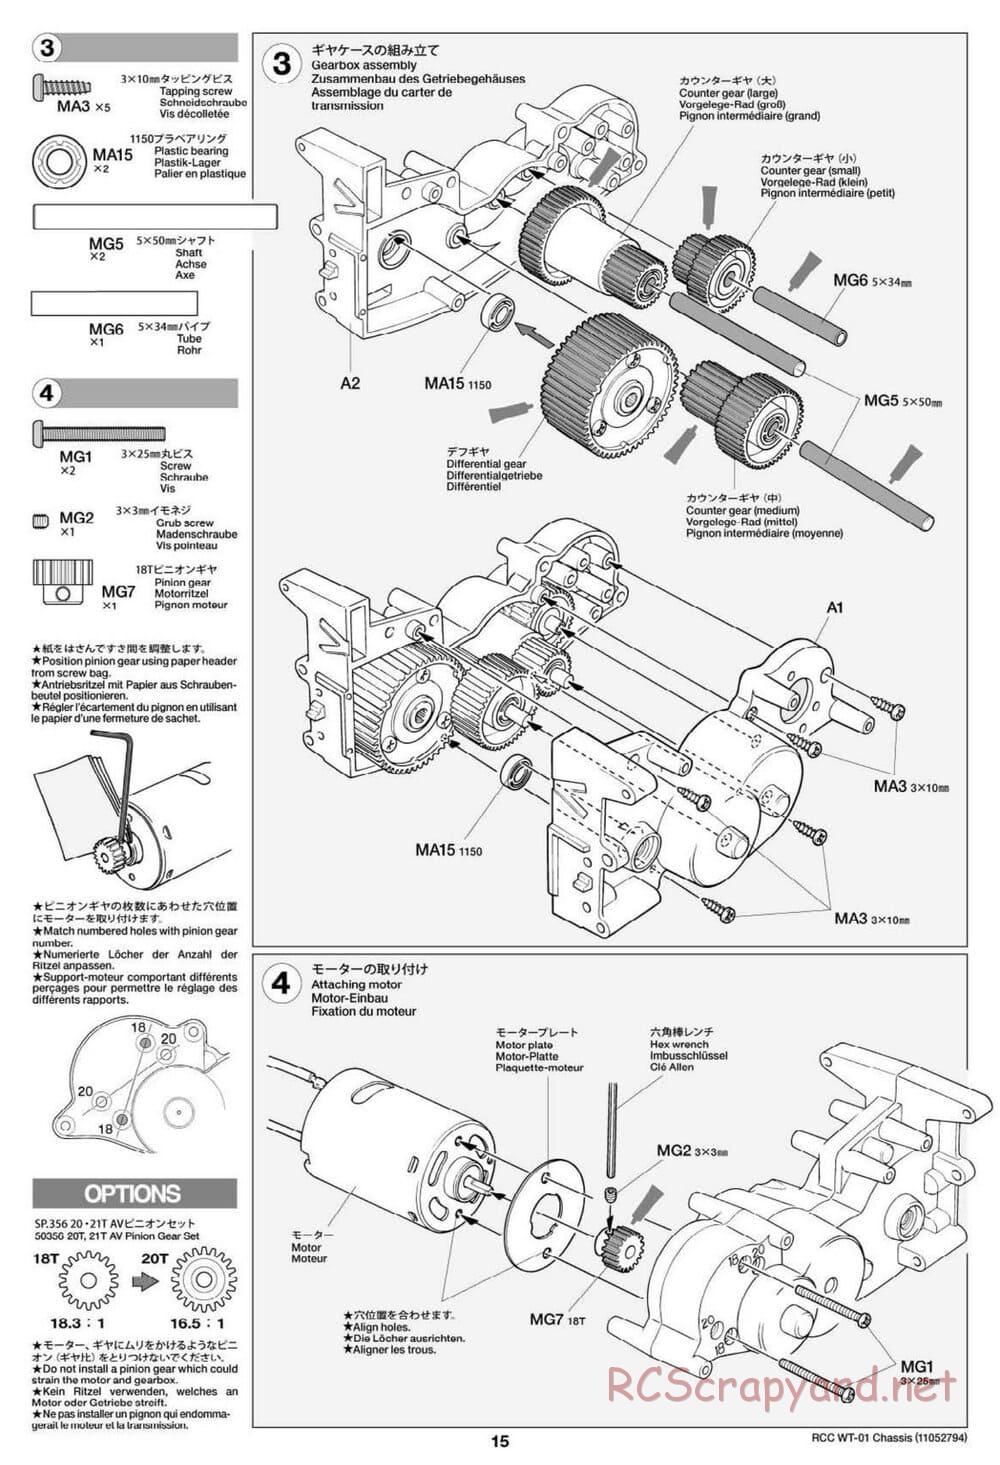 Tamiya - WT-01 Chassis - Manual - Page 15